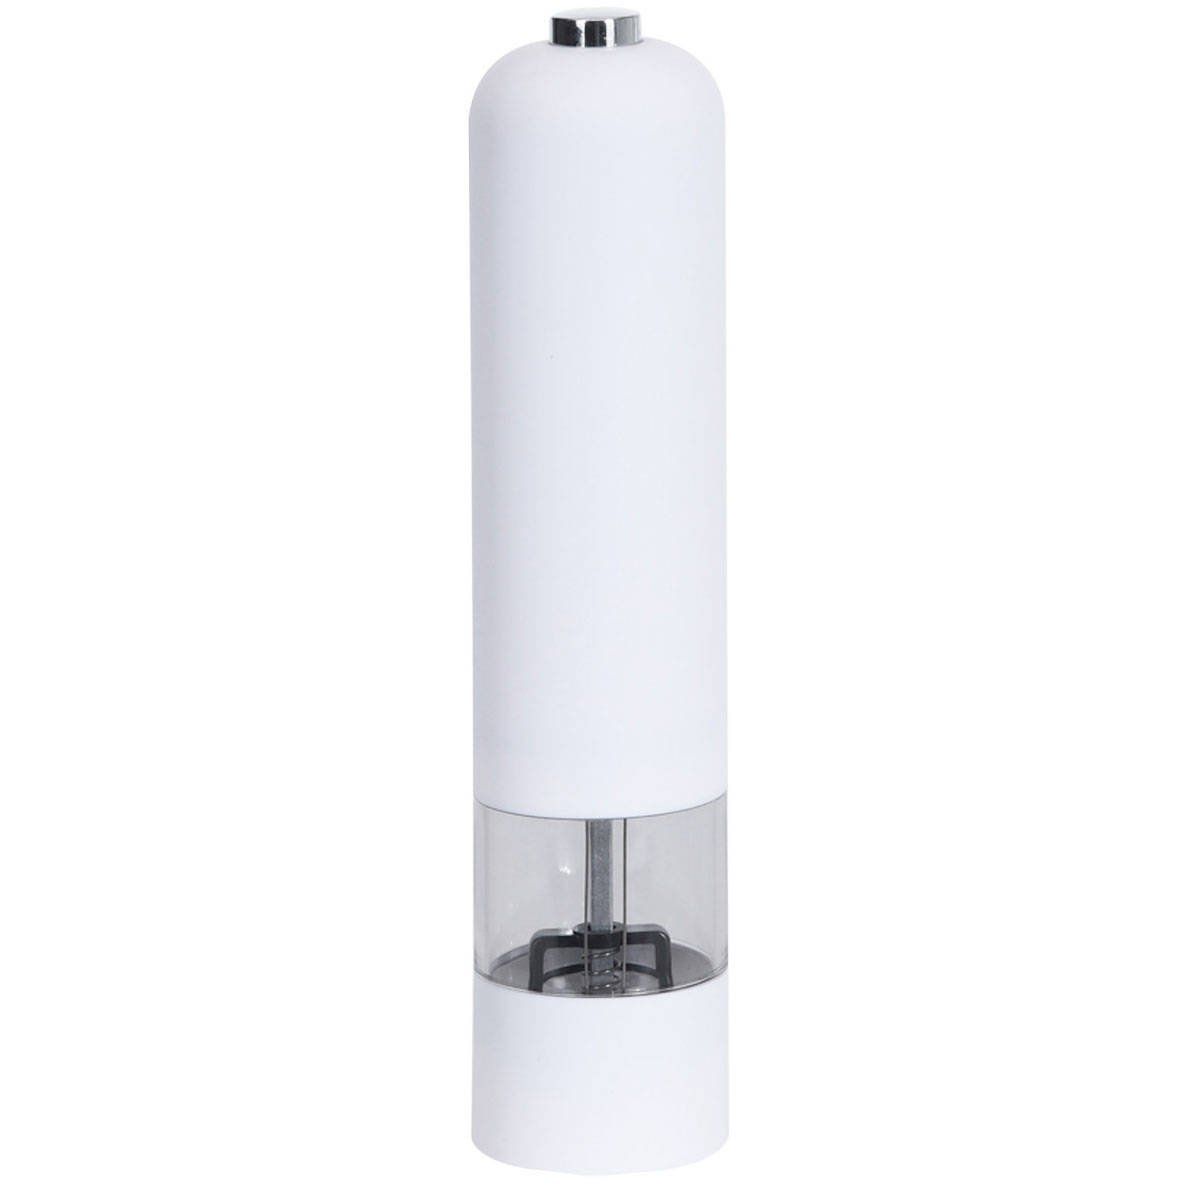 EH Excellent Houseware Elektrická mlýnek na sůl, 22 cm, bílá - EMAKO.CZ s.r.o.